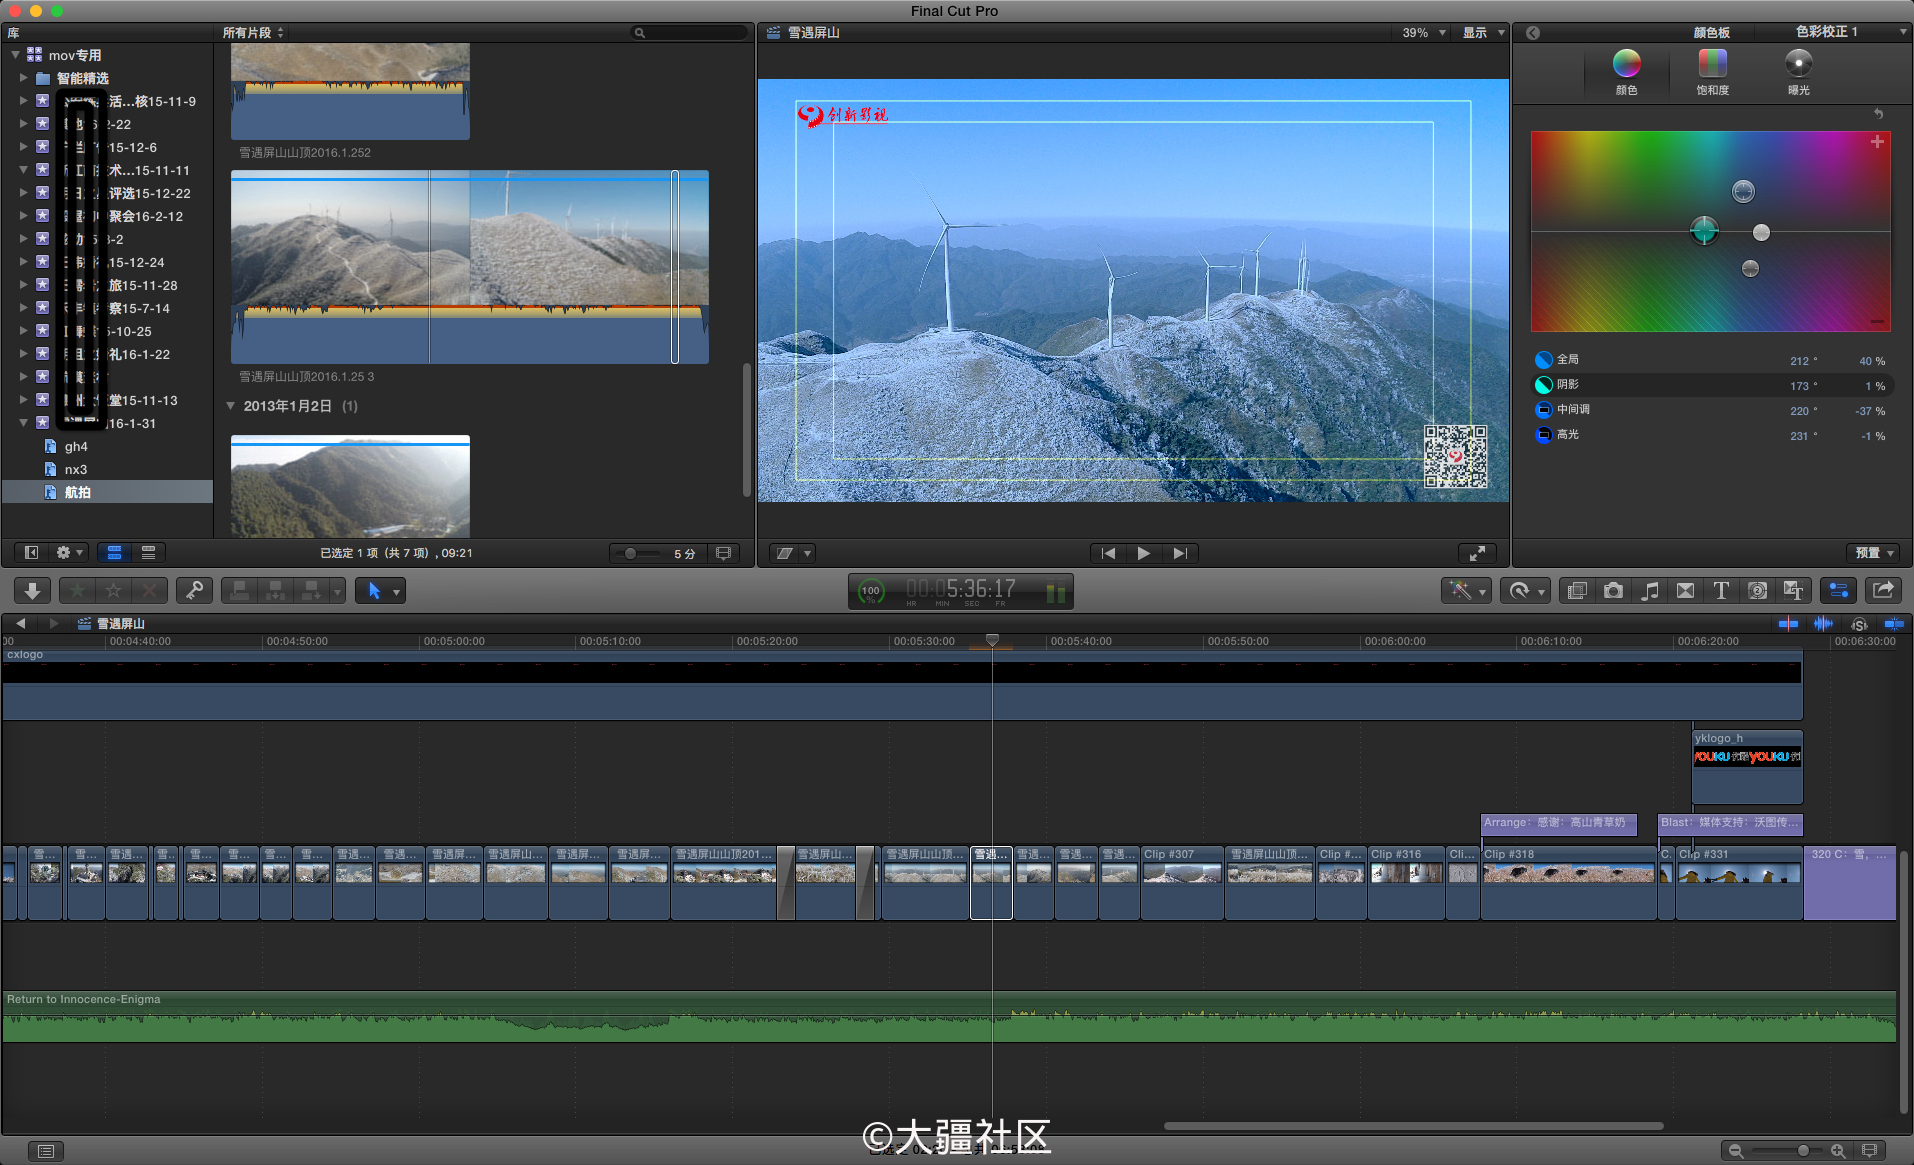 苹果视频剪辑软件 Final Cut Pro X 10.2.3(含组